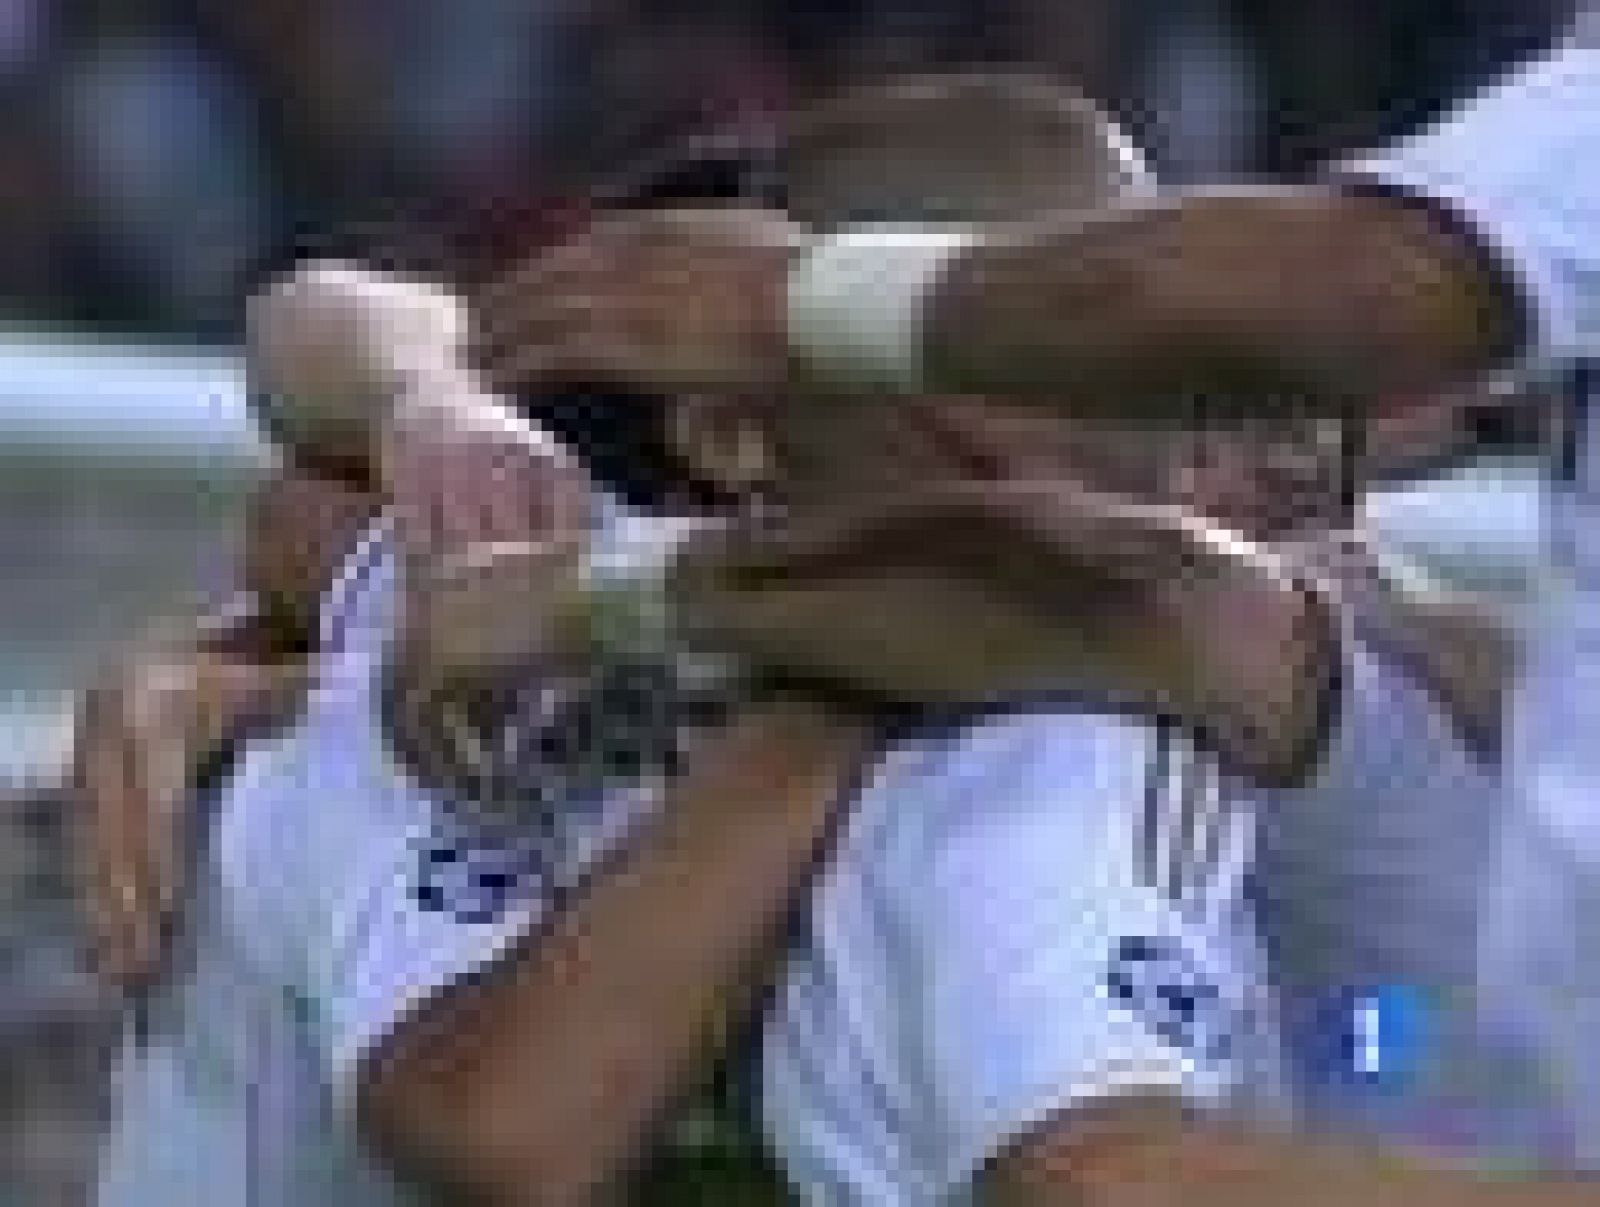 El jugador alemán Khedira ha marcado el segundo tanto del Real Madrid al Olympique de Lyon, al rematar a placer un pase de Benzema.